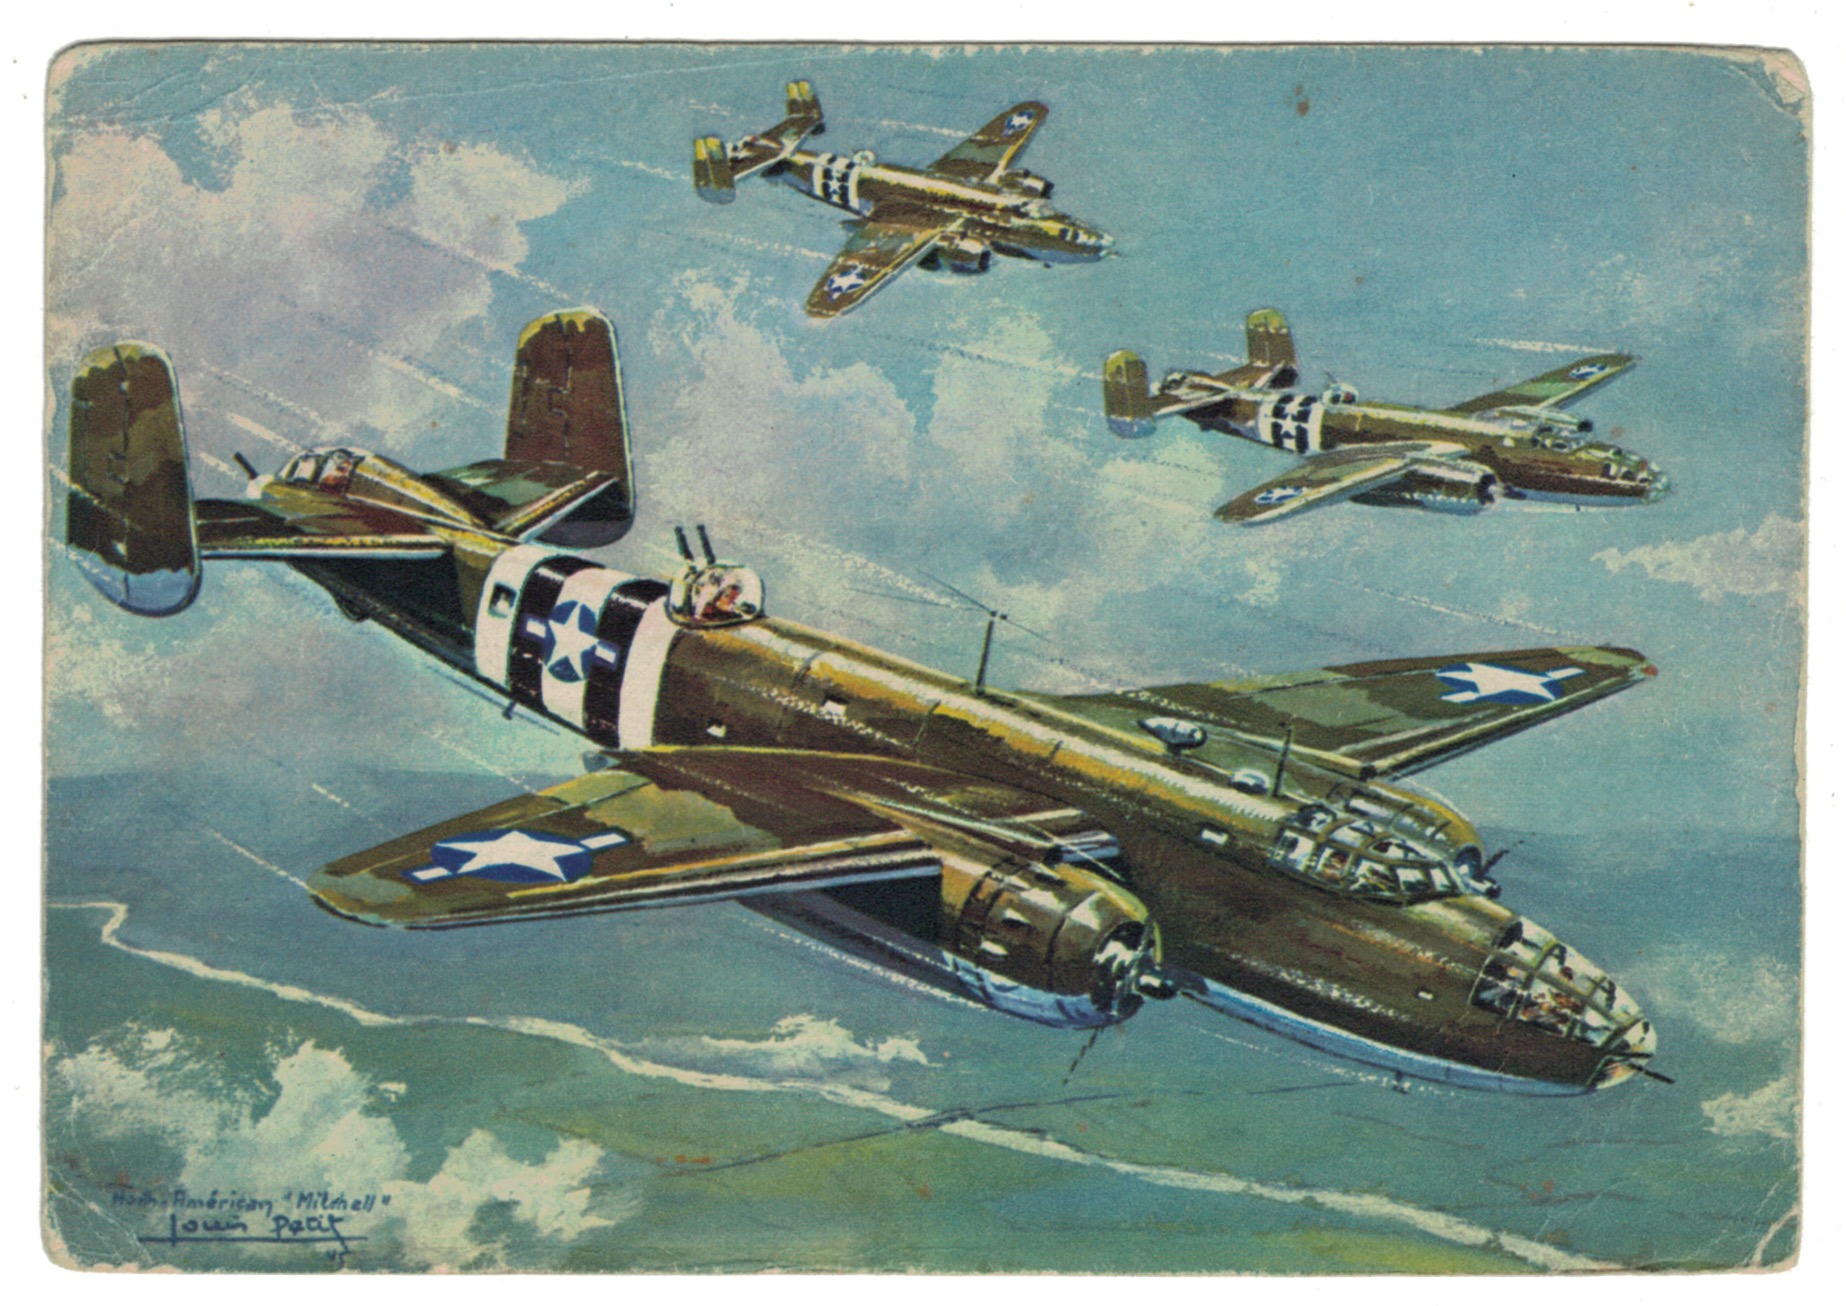 Série 18 Cartes Postale - Aviation - Guerre 39/45 - Illustration Louis Petit - Atelier D'art L.E.P. Paris 9e